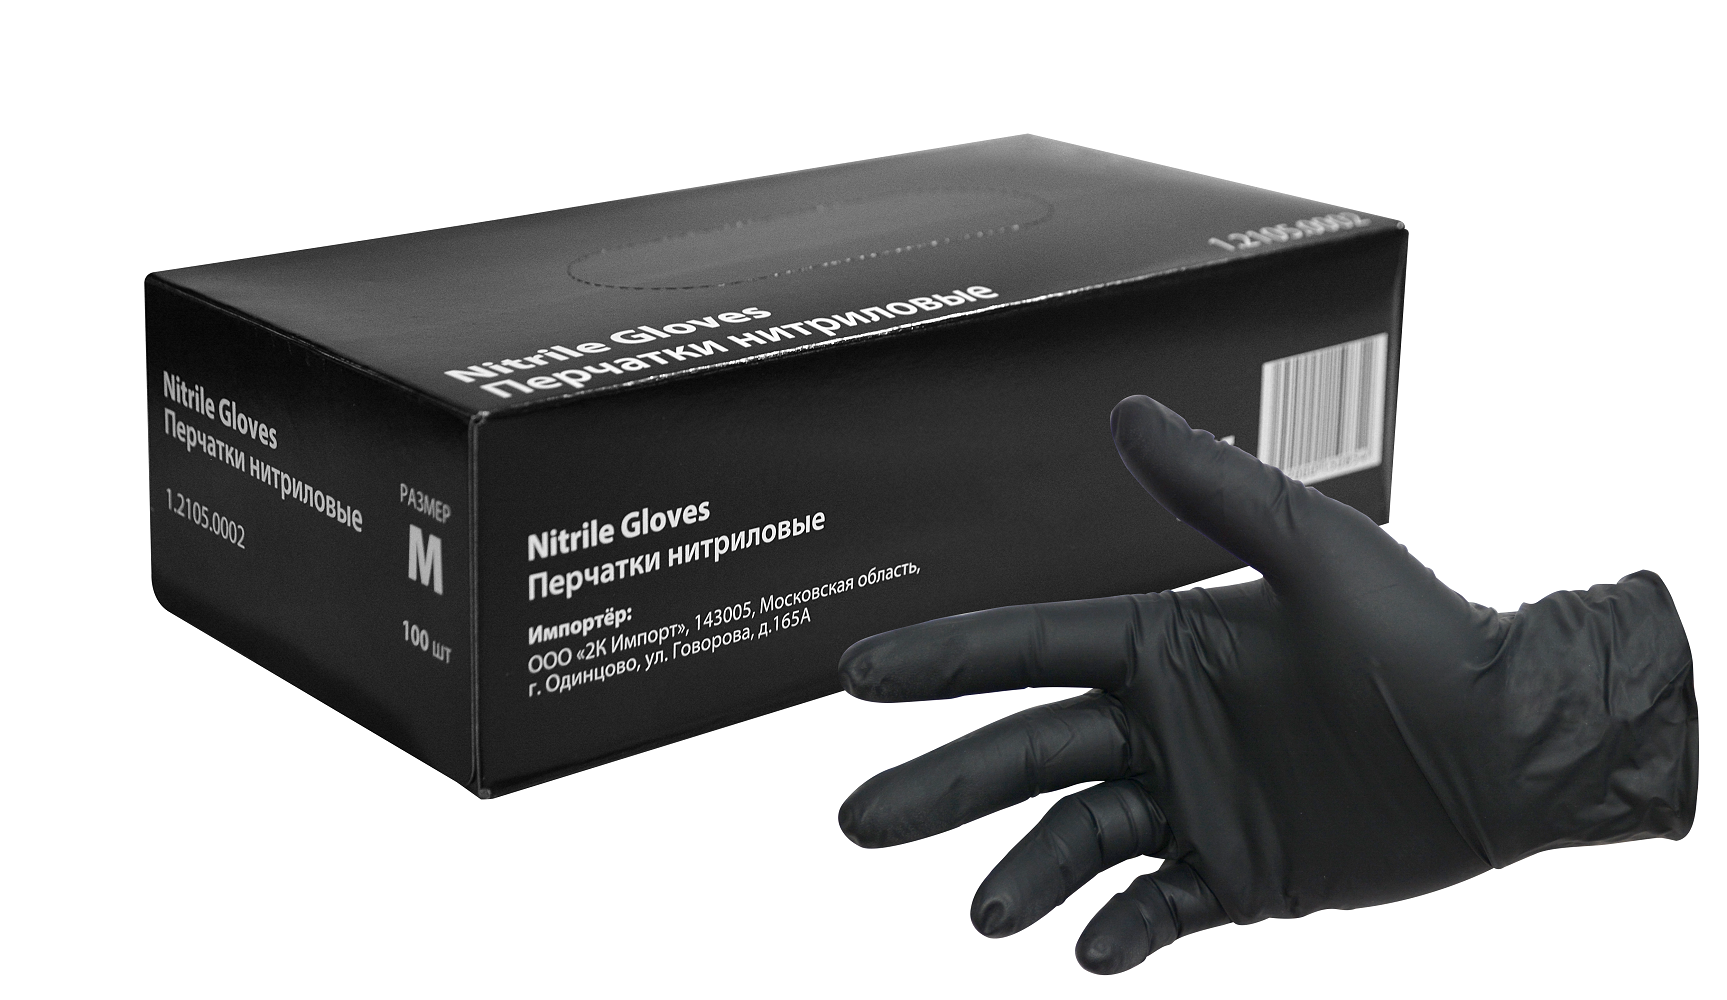 Перчатки нитриловые черные INTERCOLOR 60 мкм размер M (100 шт.) lucky reptile перчатка защитная кожаная на левую руку protection glove